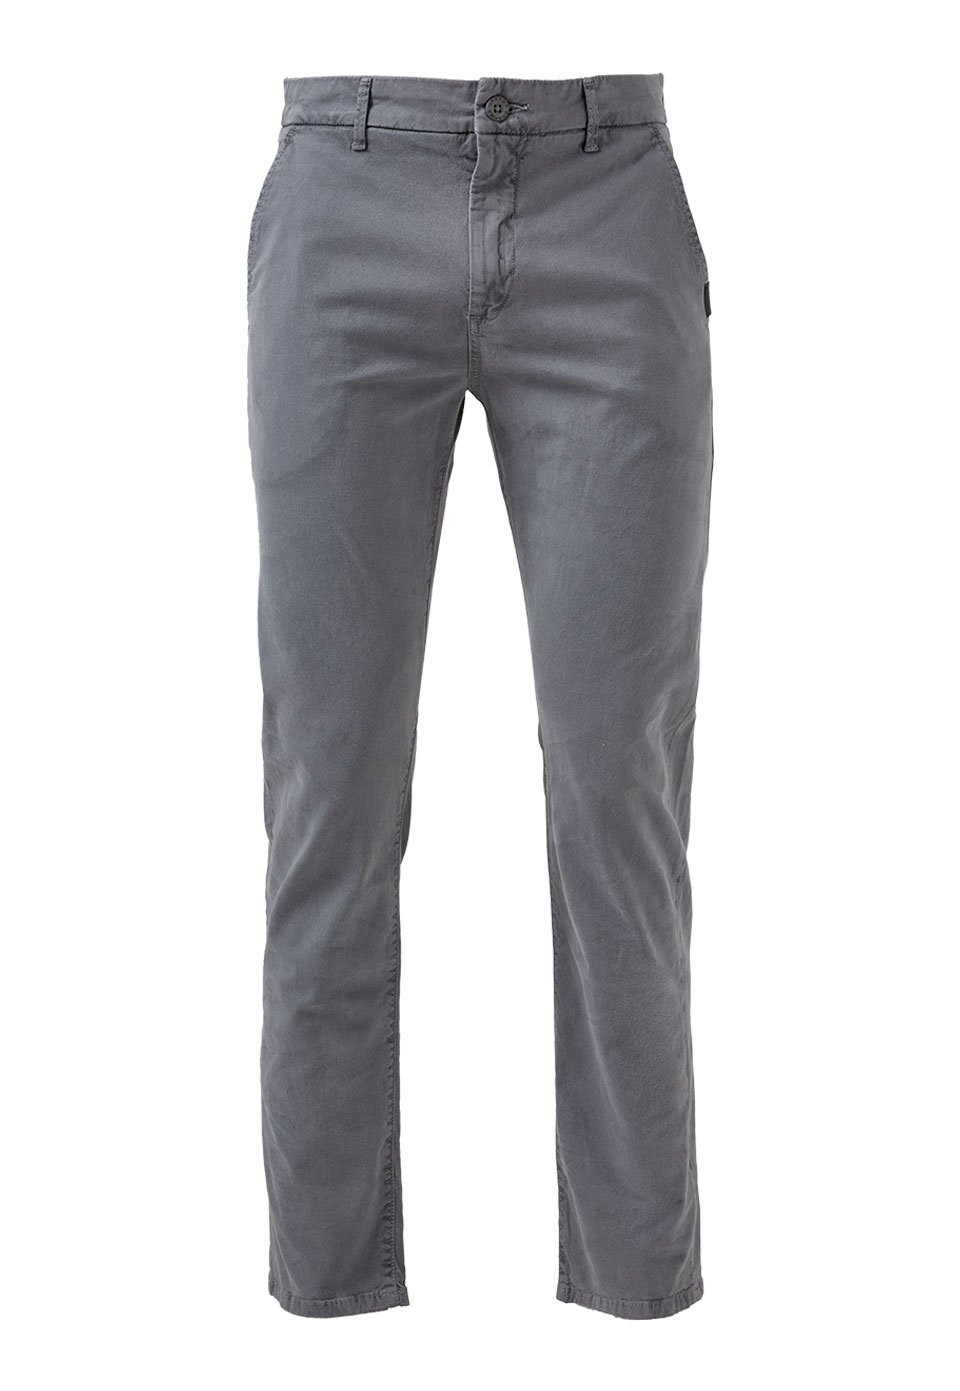 pantalon gris hombre//